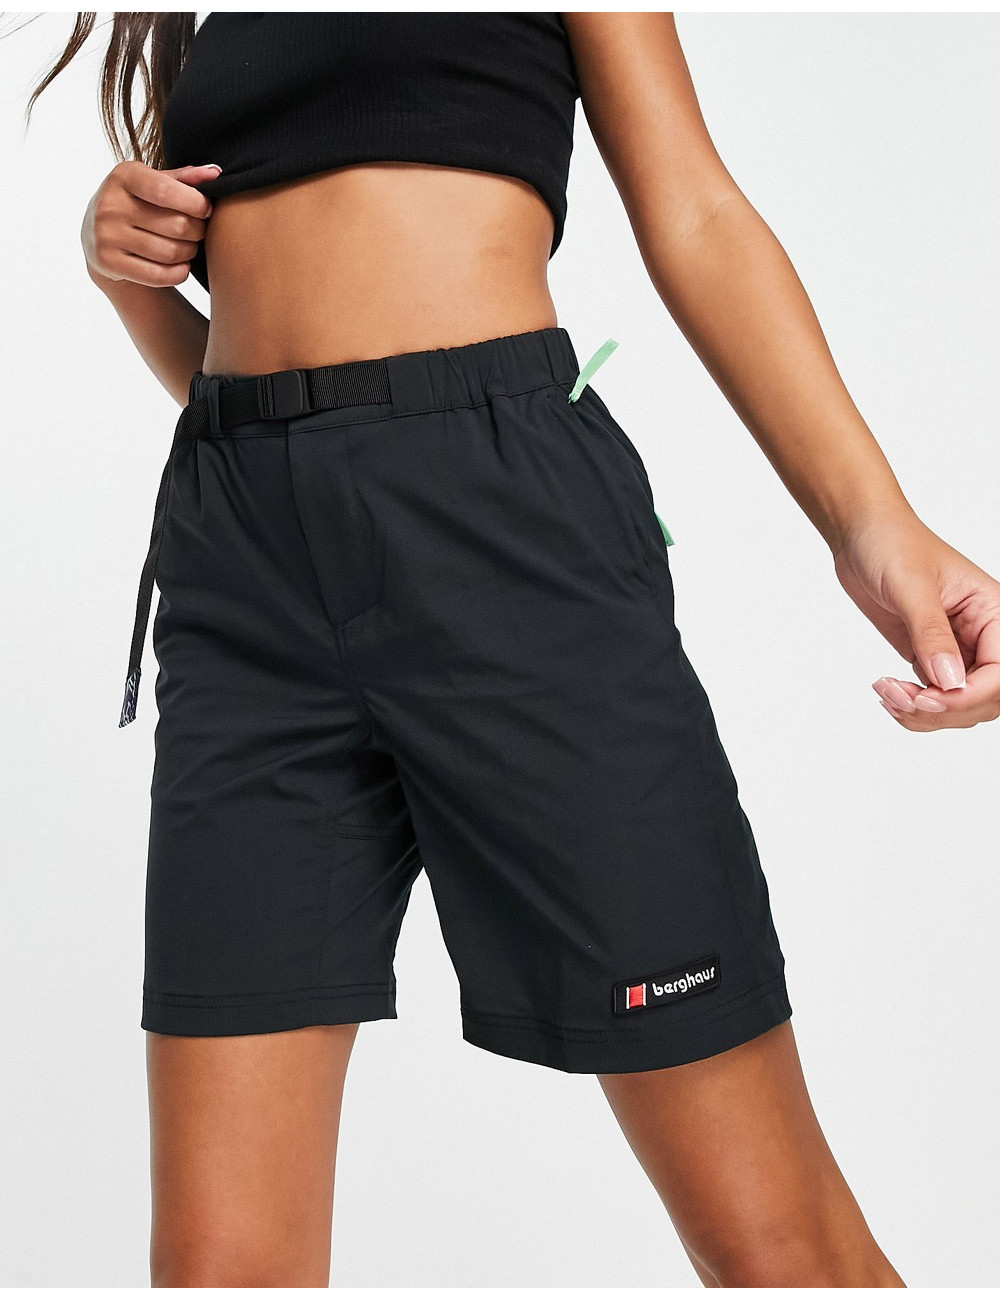 Berghaus logo shorts in black